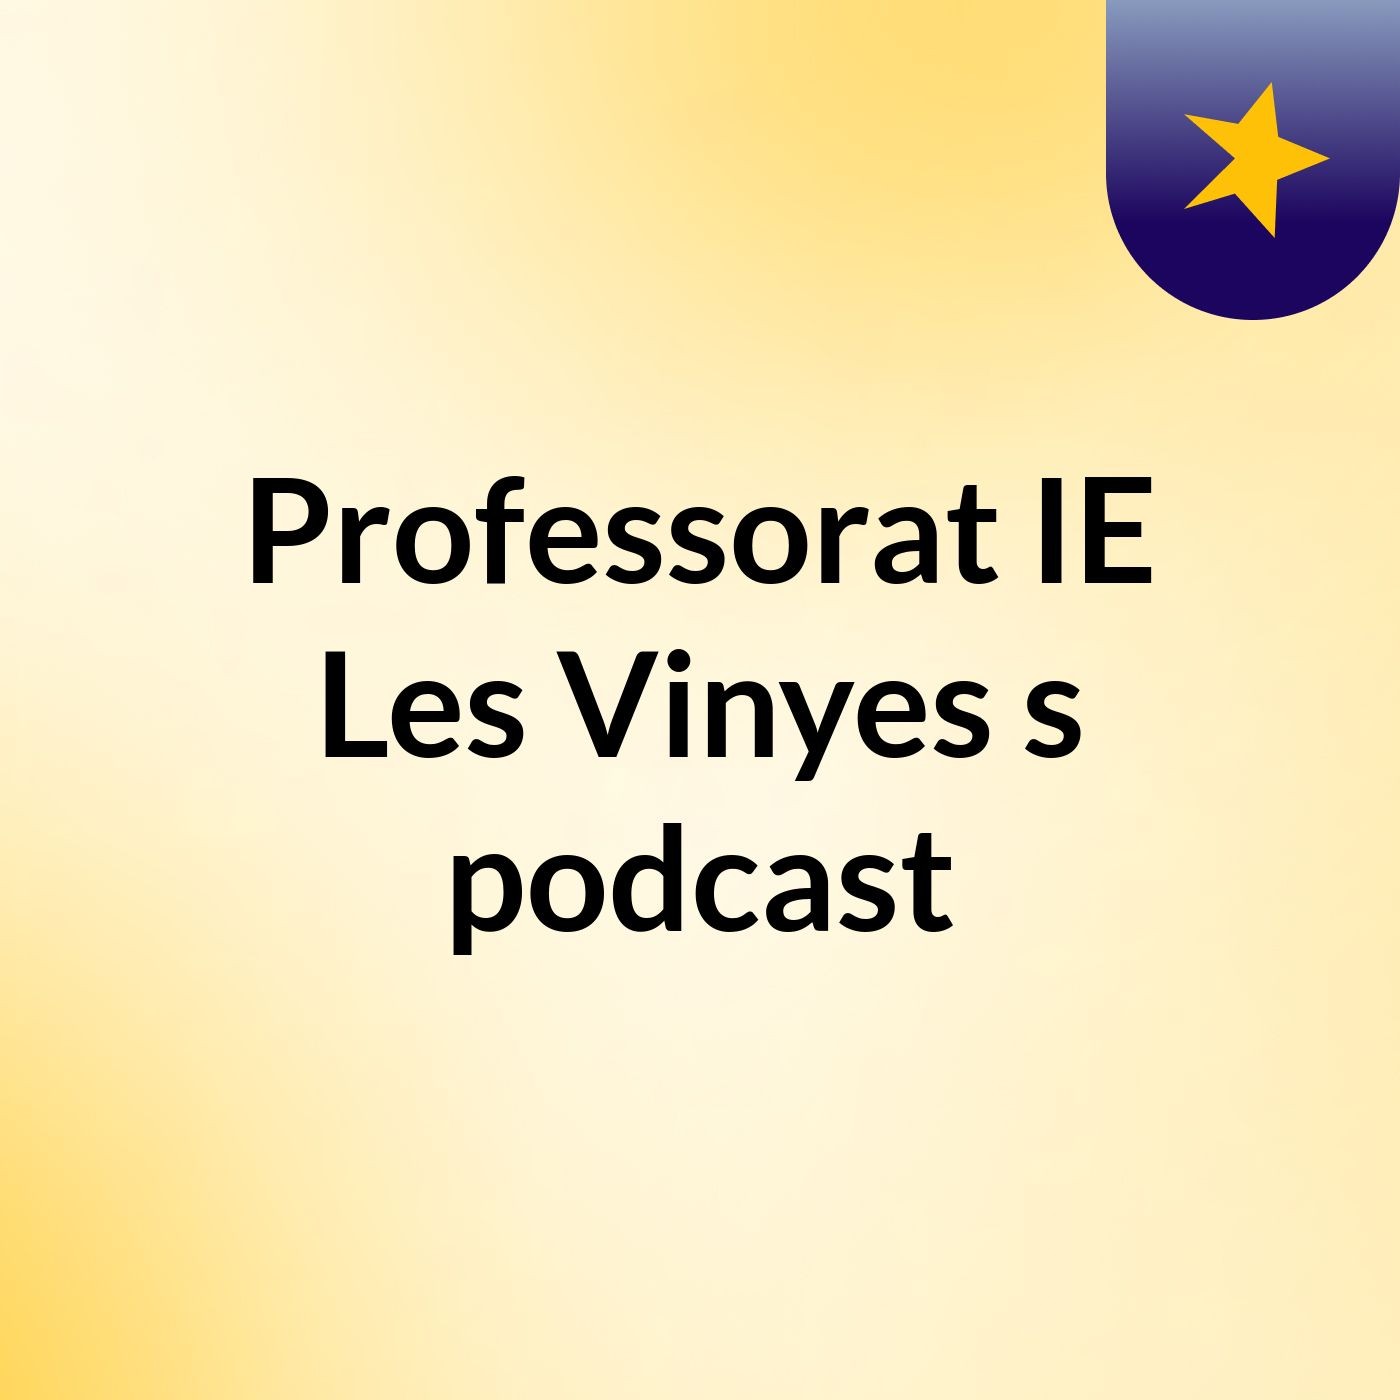 Professorat IE Les Vinyes's podcast